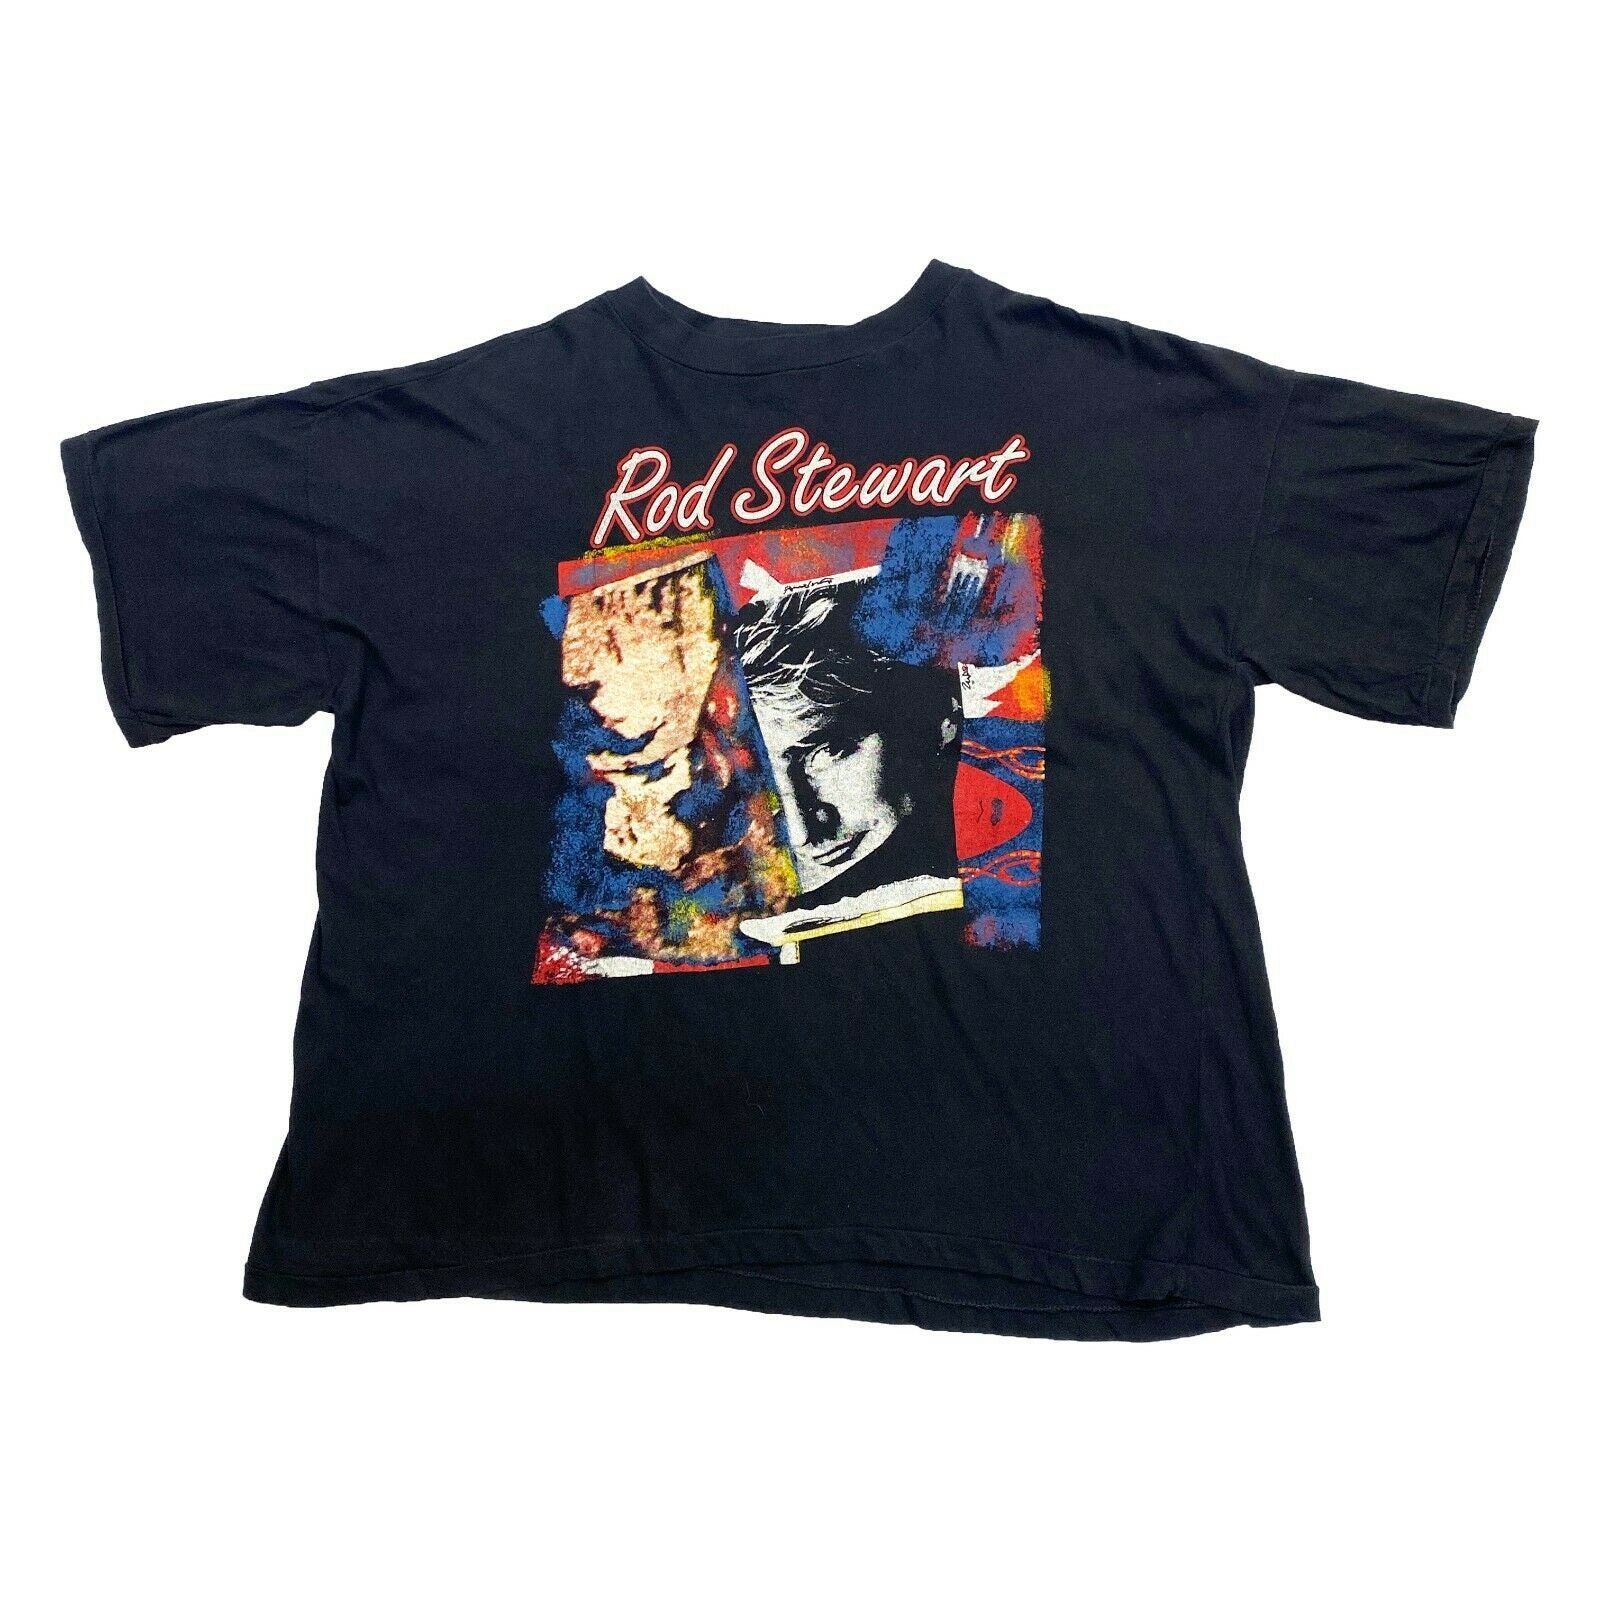 Stewart Vagabond Tour Tshirt British Rock | Etsy